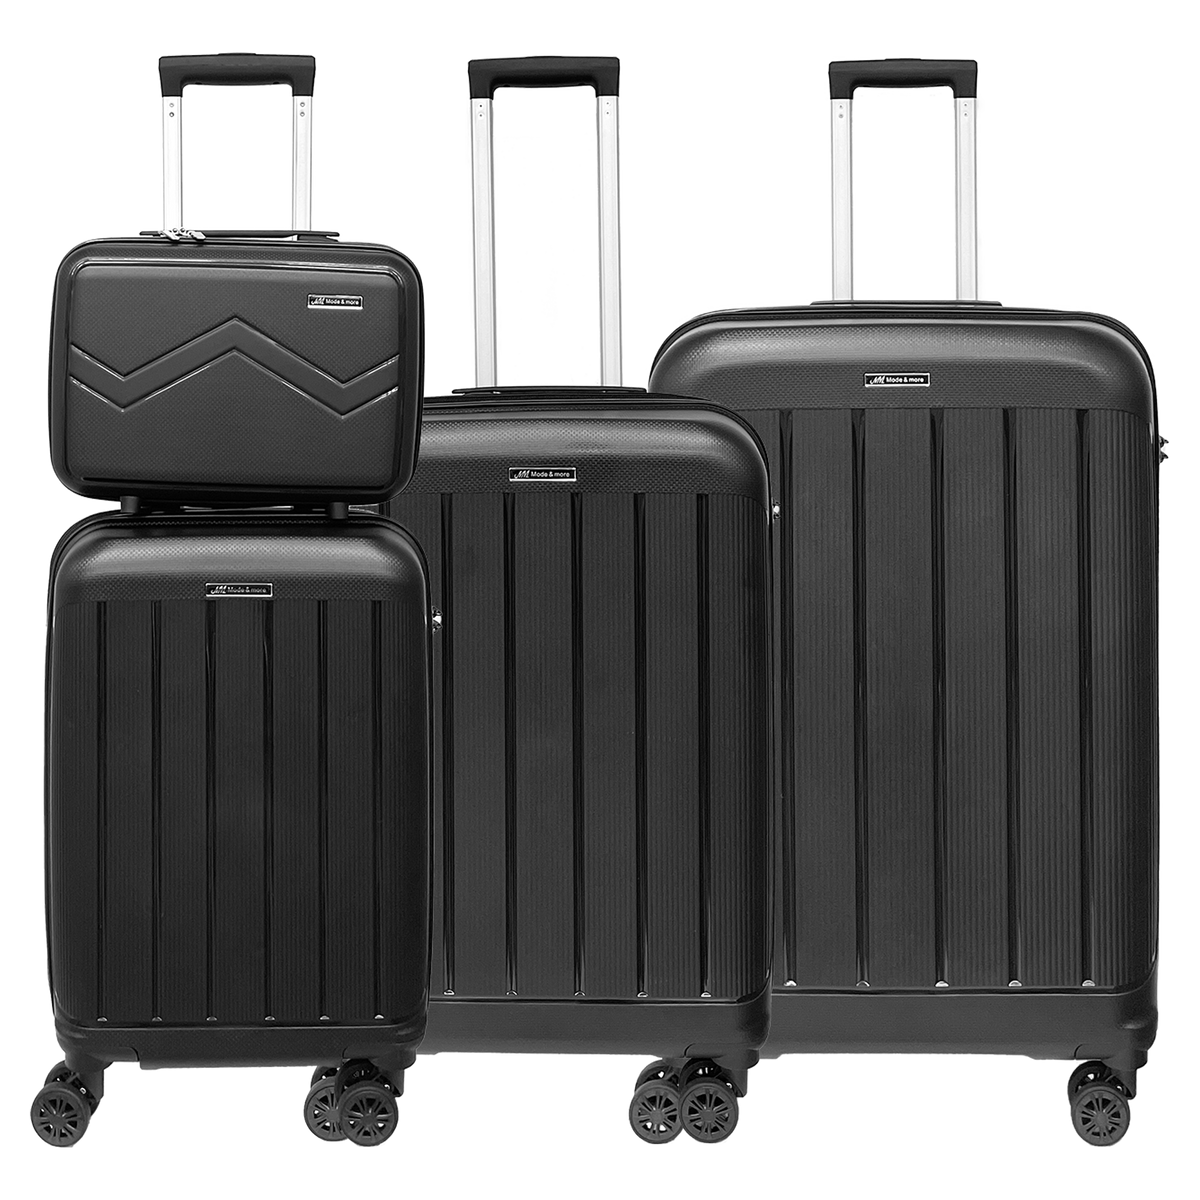 Ensemble 4 valises polypropylène souple léger, serrure TSA. Bagages haute qualité, très légers, avec trousse beauté